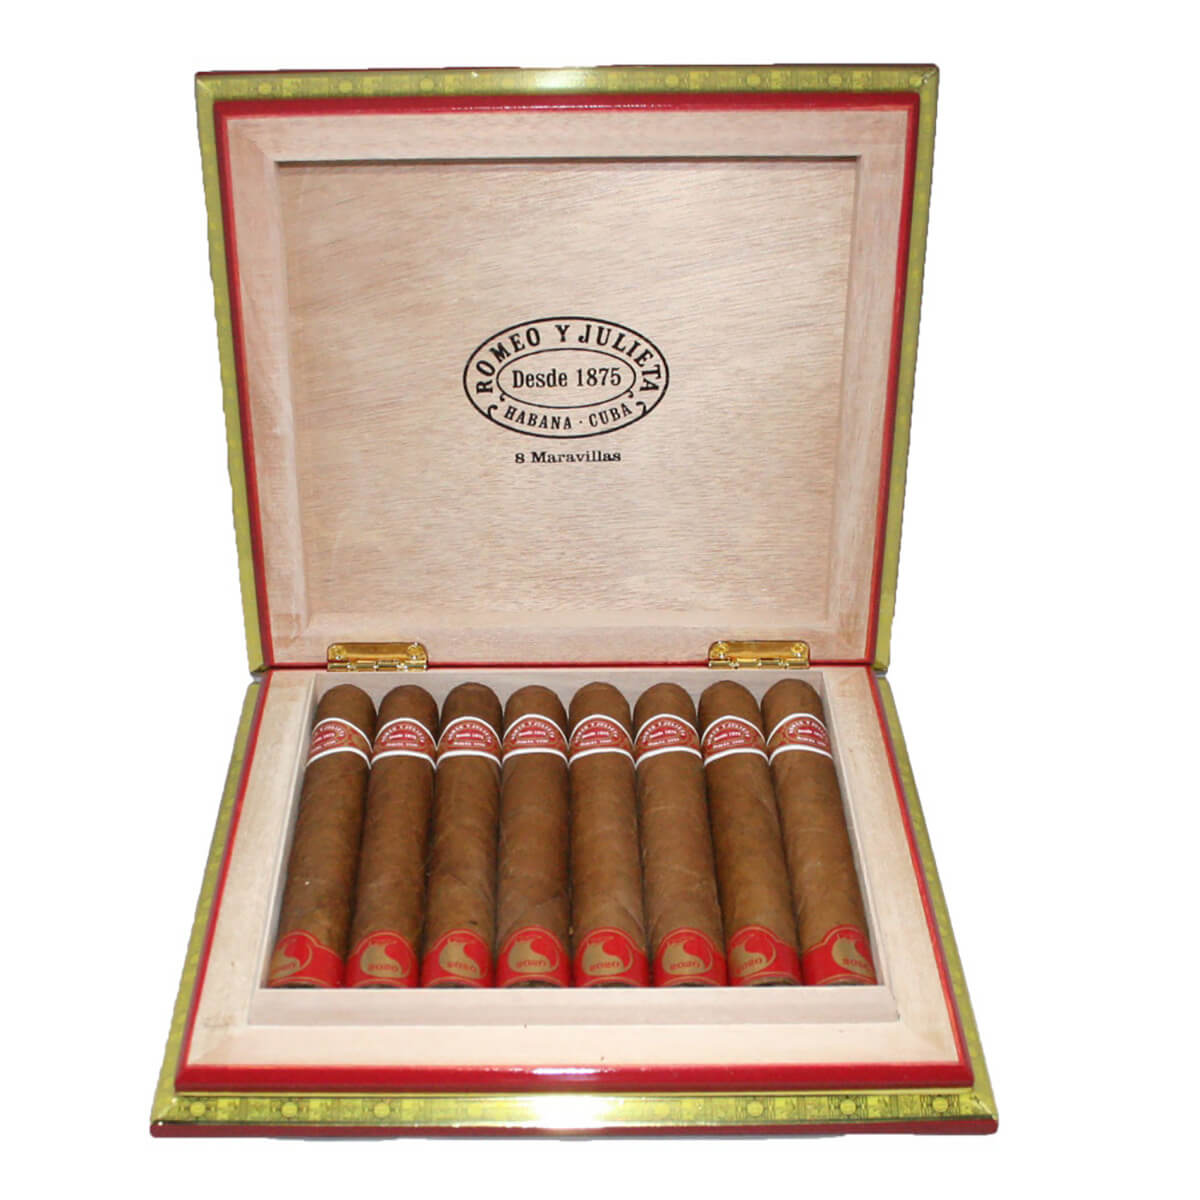 Romeo & Julieta Maravillas 8 Cuban Cigars: Large Size, Medium Flavor ...